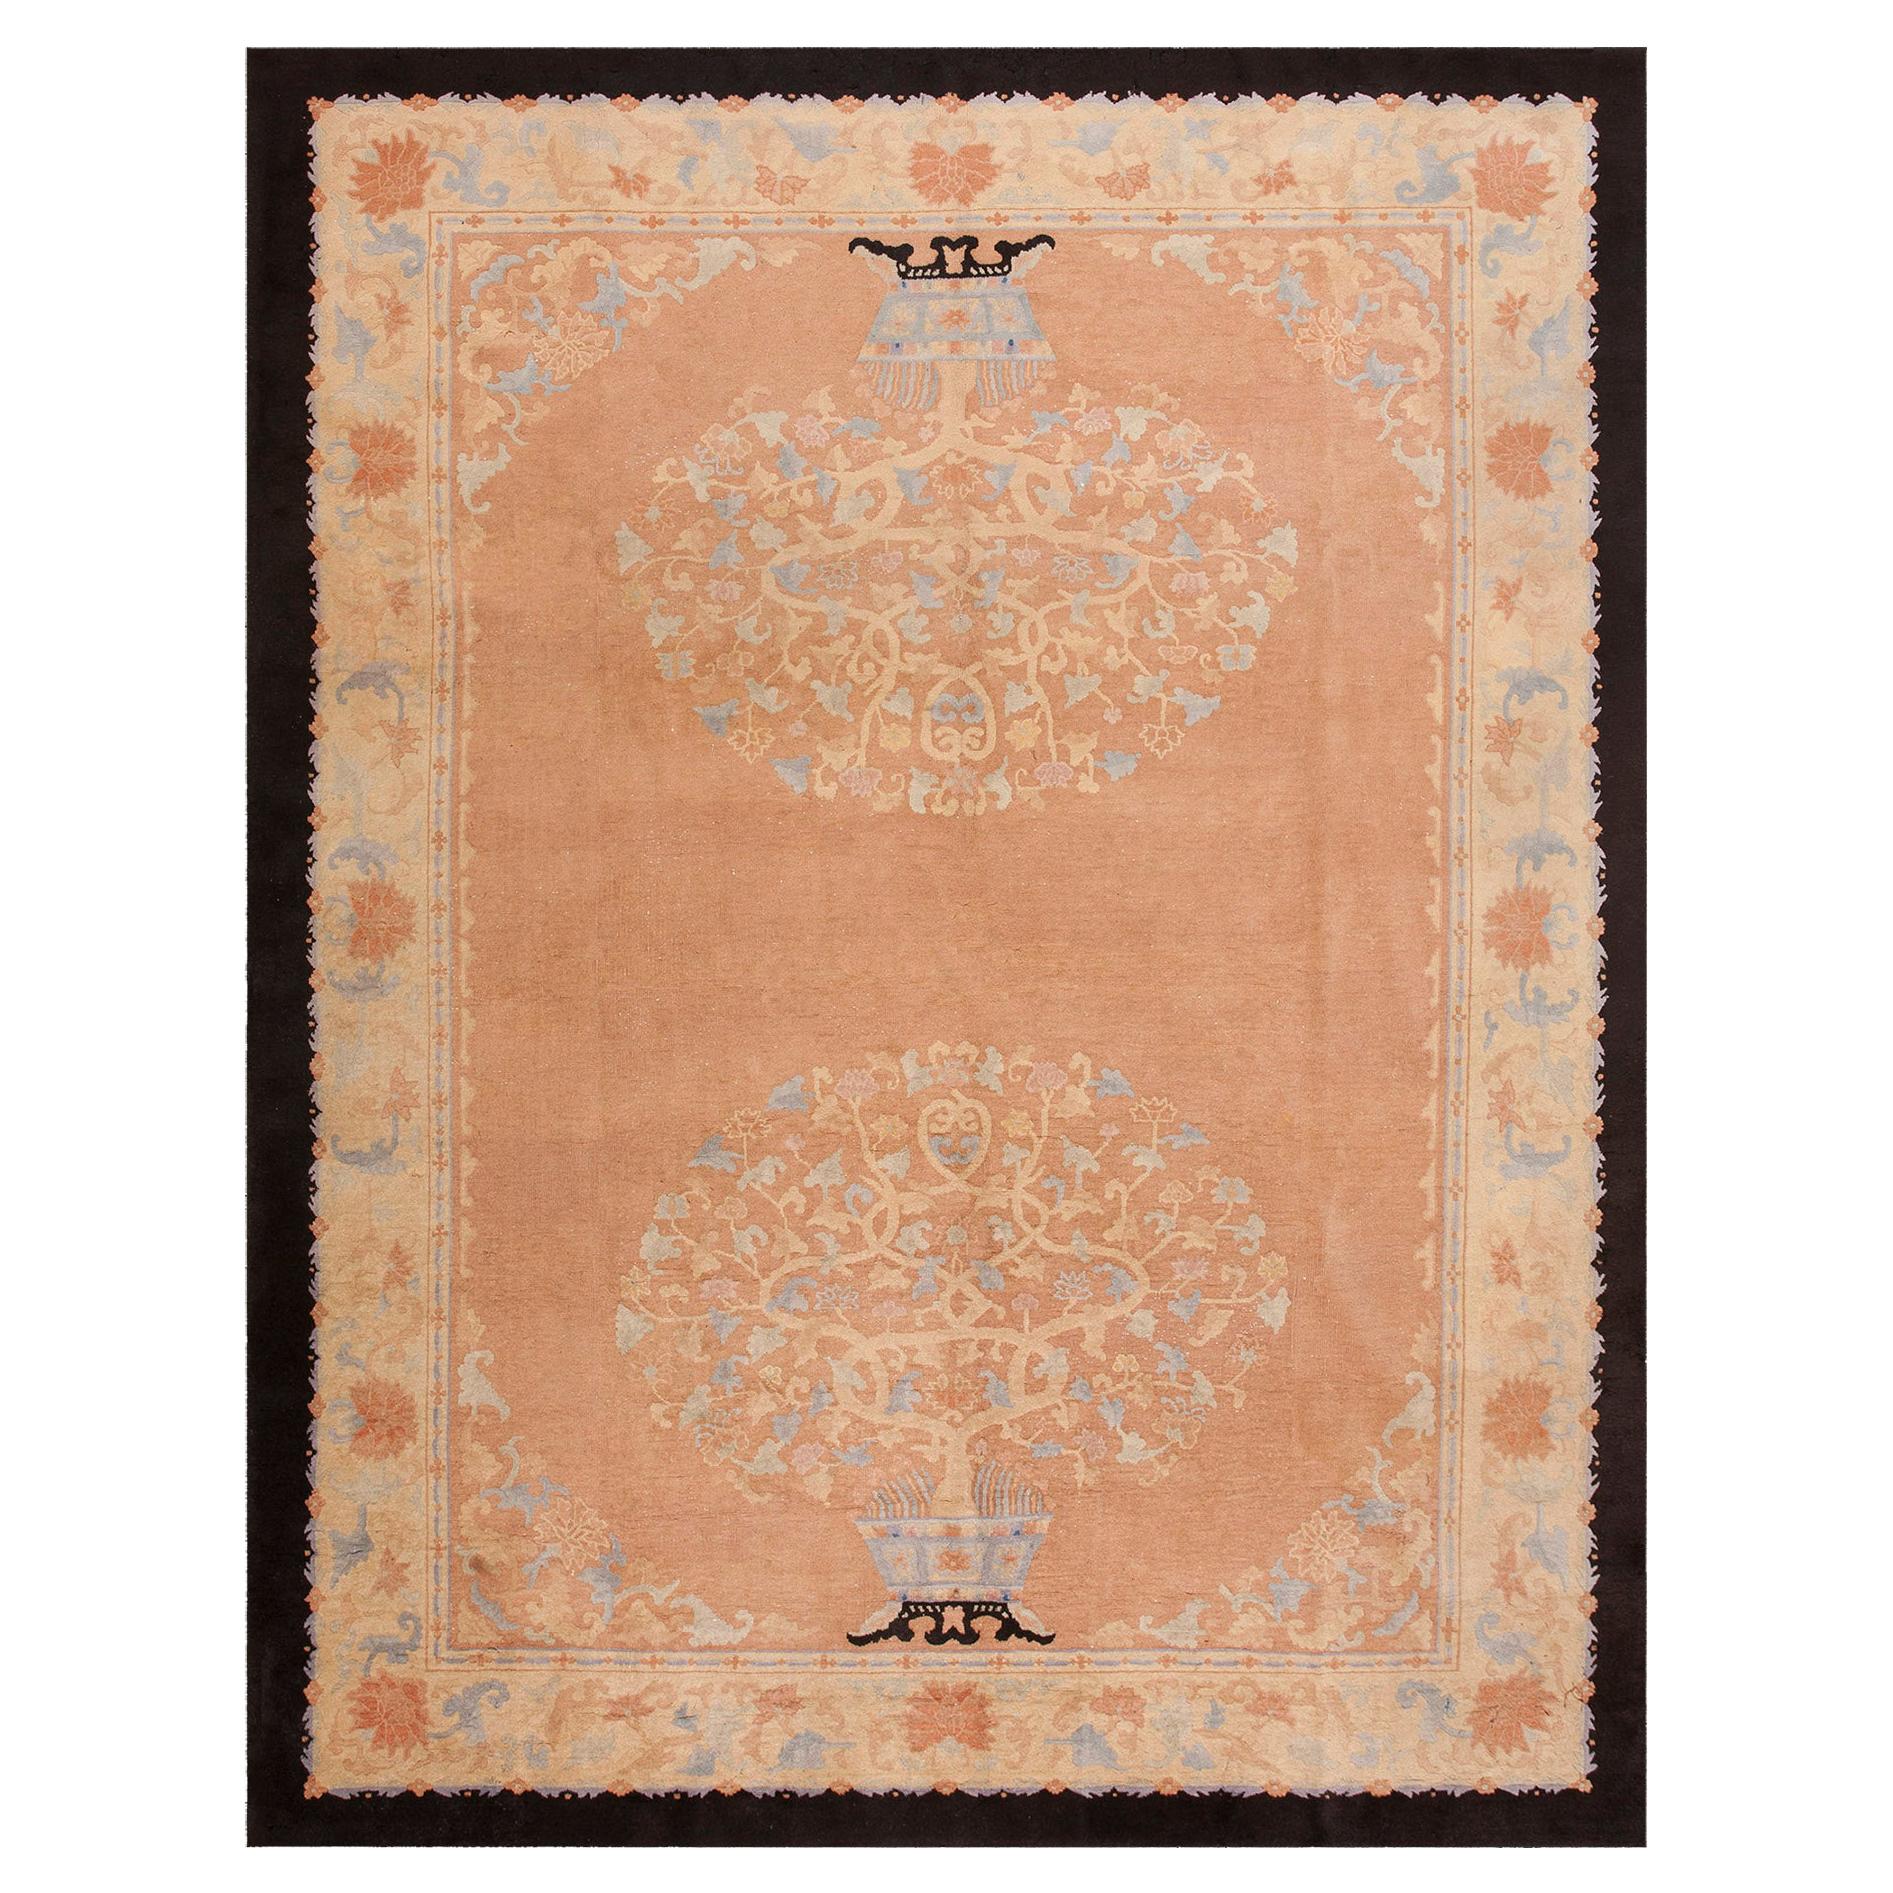 Chinesischer Art-Déco-Teppich aus den 1920er Jahren ( 9' x 11' 6"" - 275 x 350 cm)